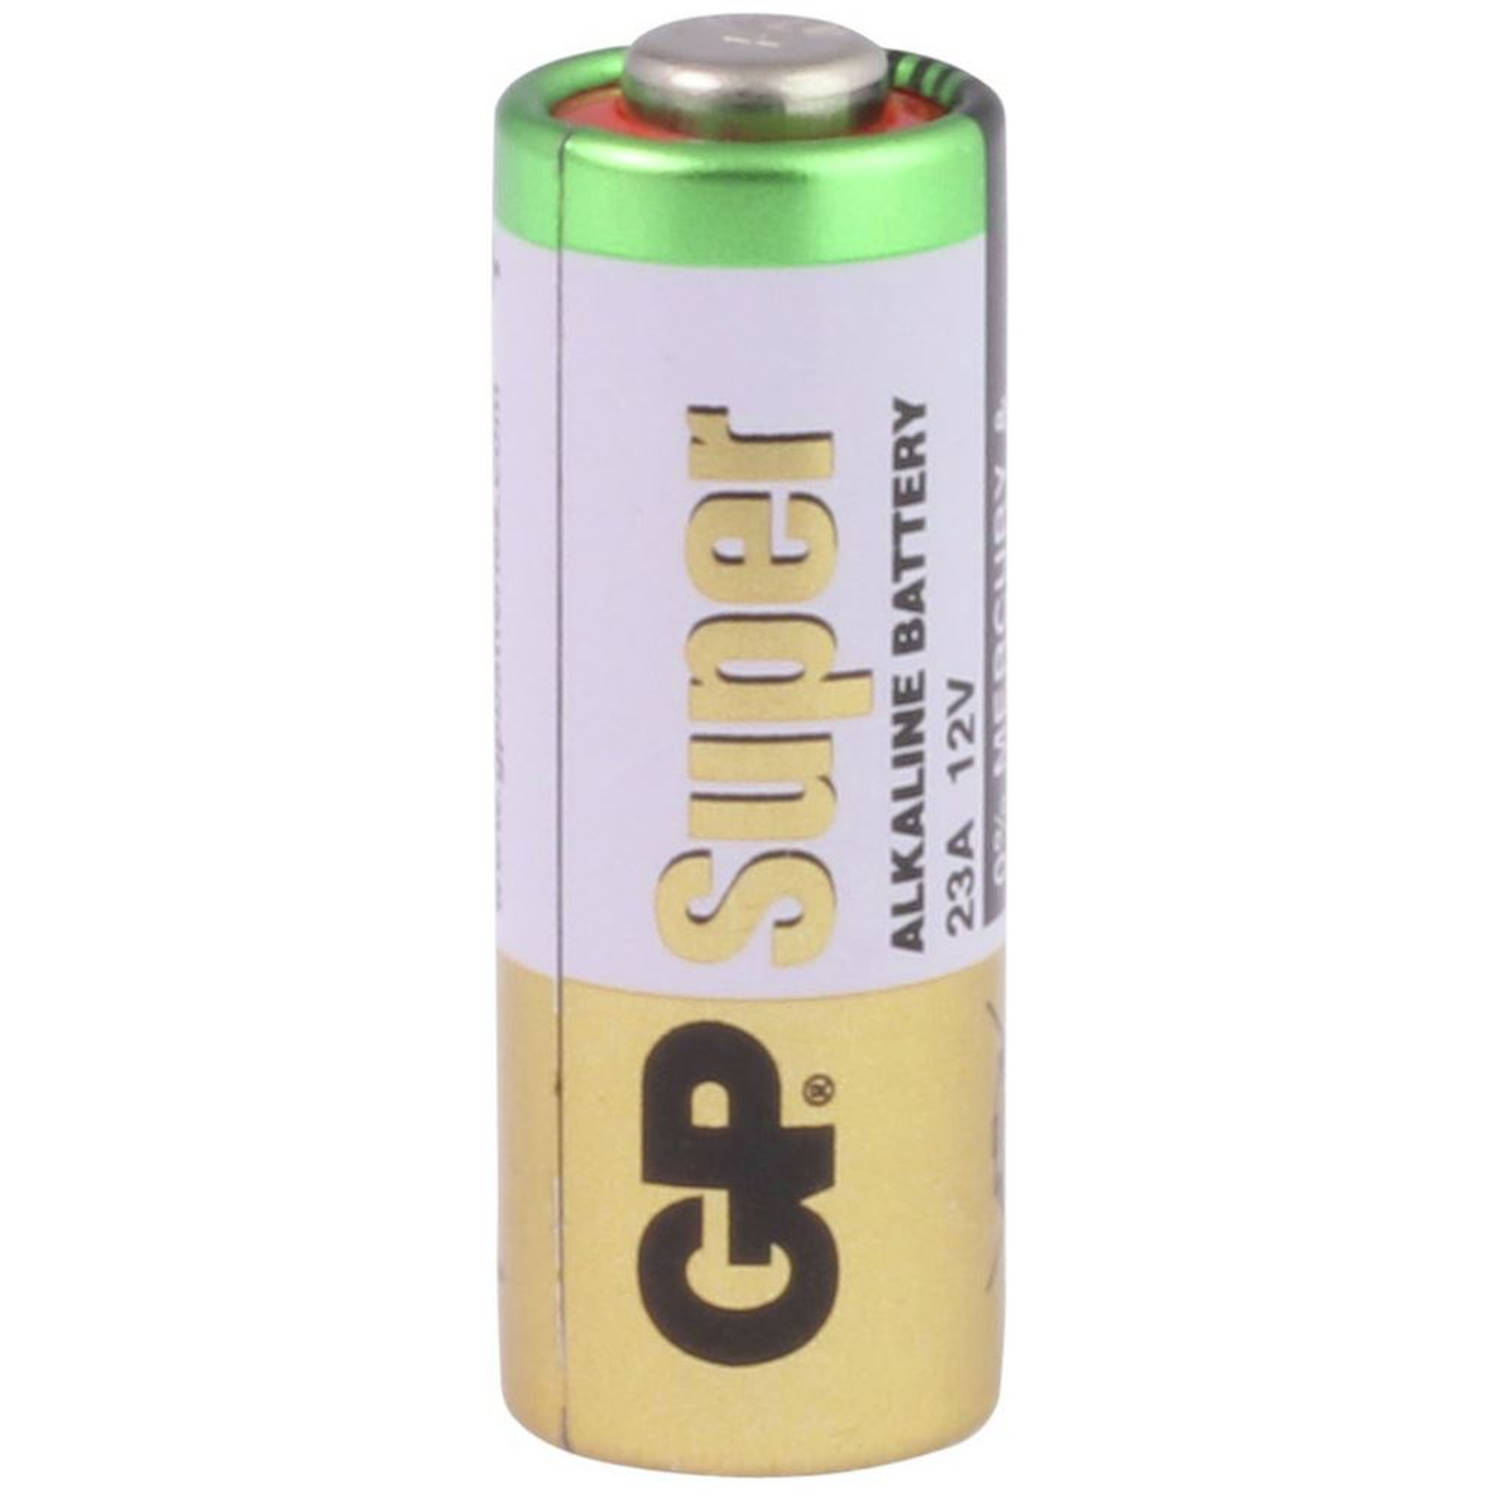 doe alstublieft niet Opera Uitstekend GP 23A 4 stuks Alkaline Batterij | Blokker